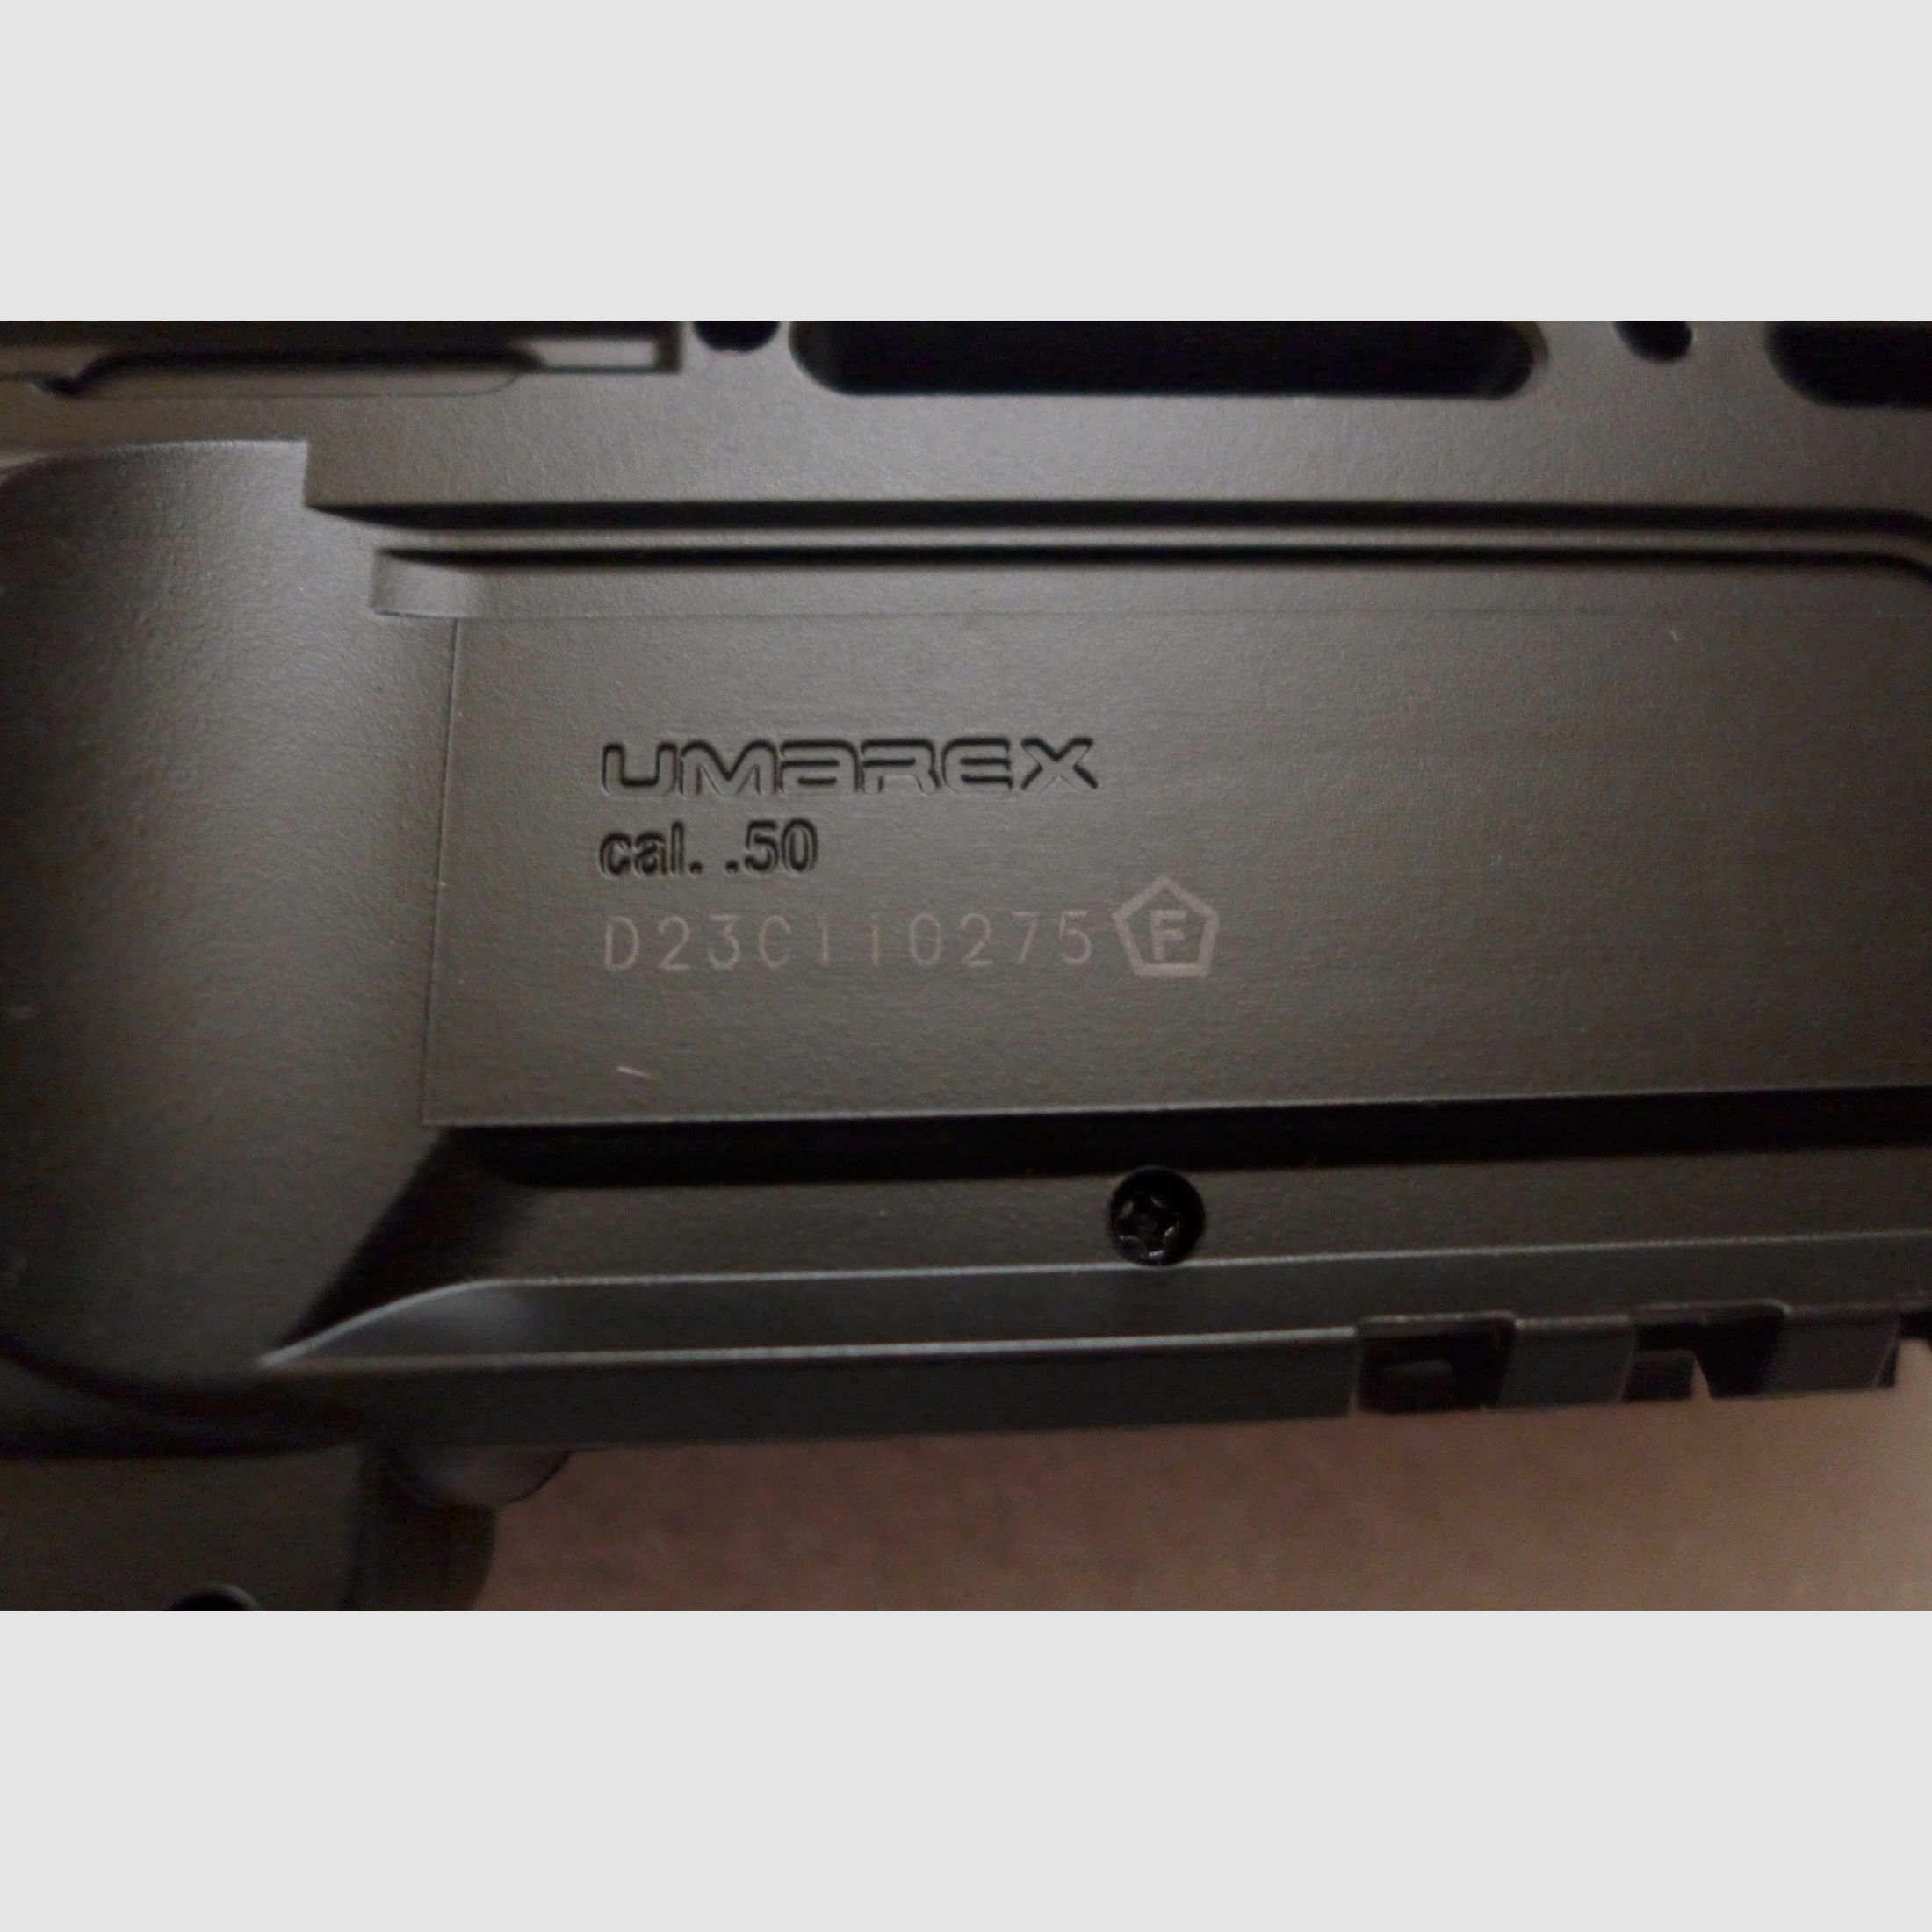 Neuwertige Umarex RAM - T4E  - HDR 50 mit Zubehör in OVP und Kauf-Rechnung wegen bestehender Gewährleistung